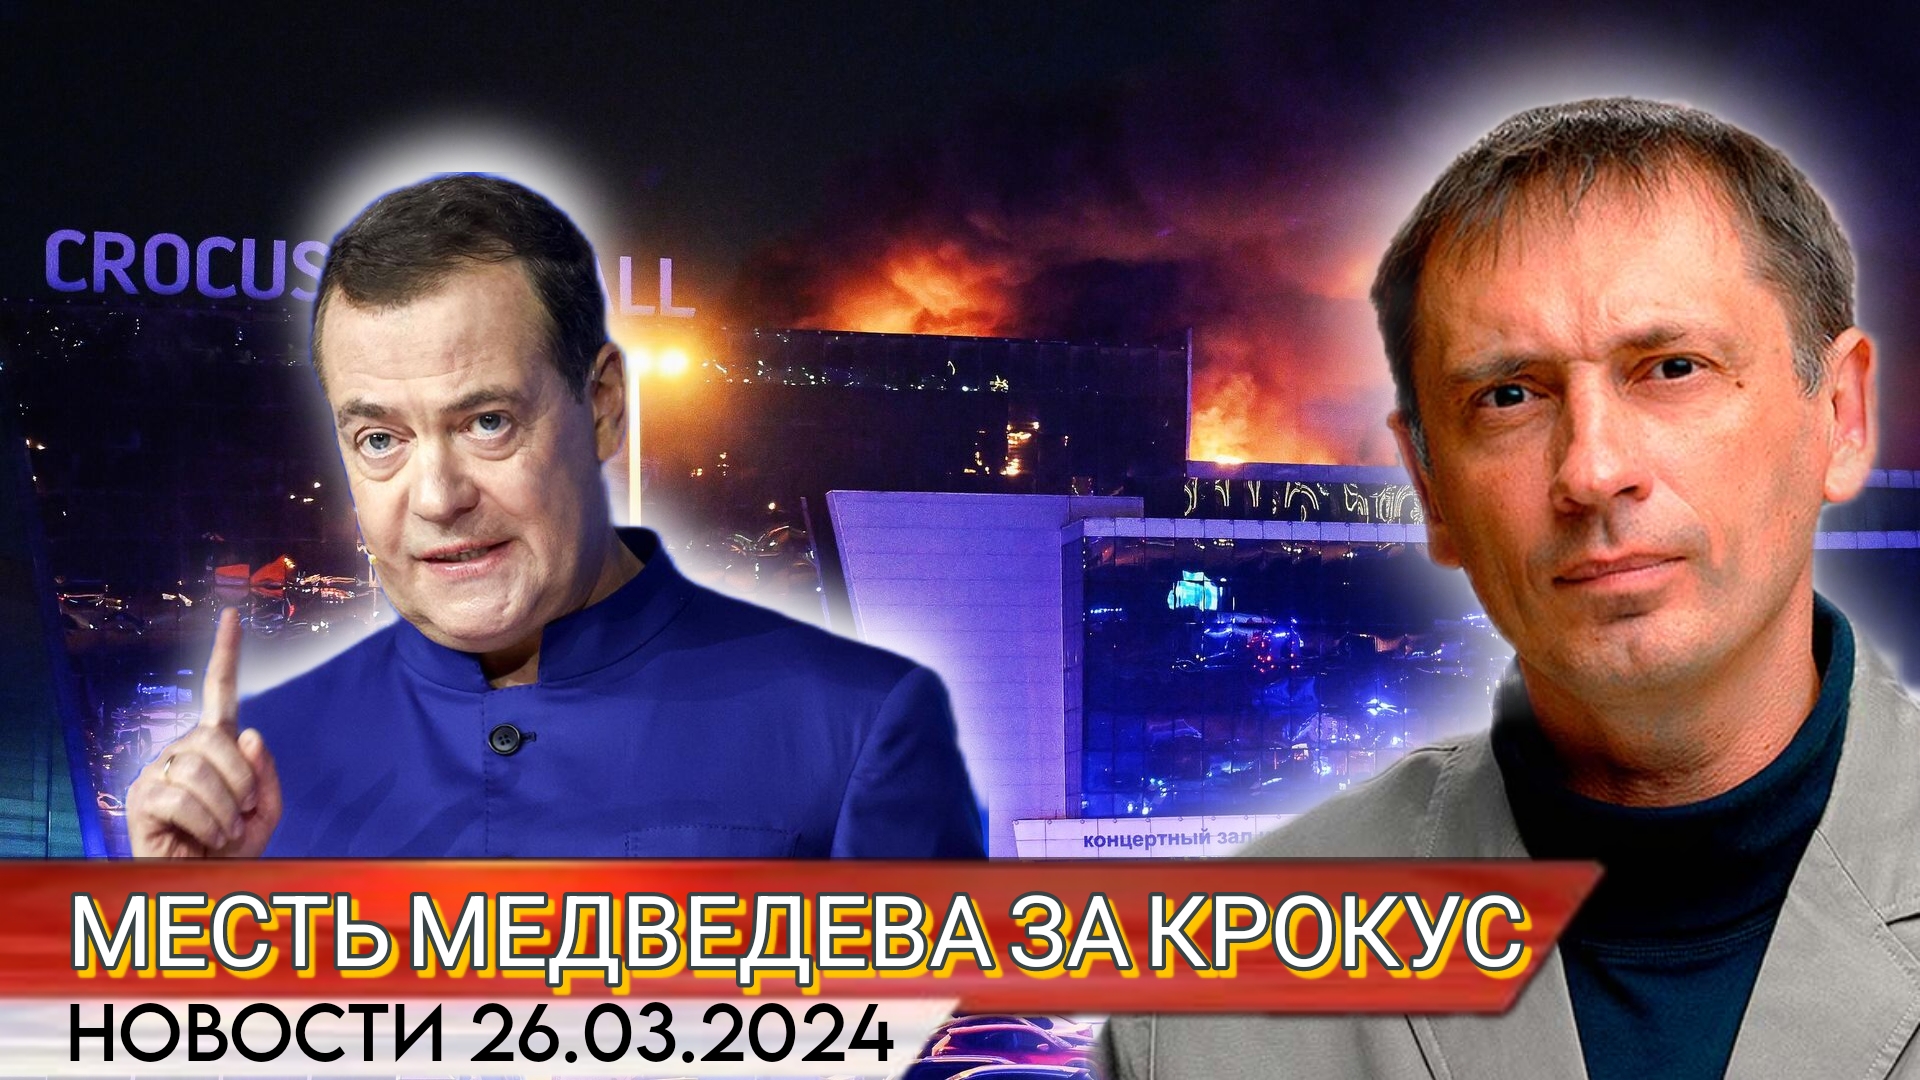 Эйдриенн Уотсон: Украина не имеет отношения к теракту в концертном зале "Крокус сити холл"